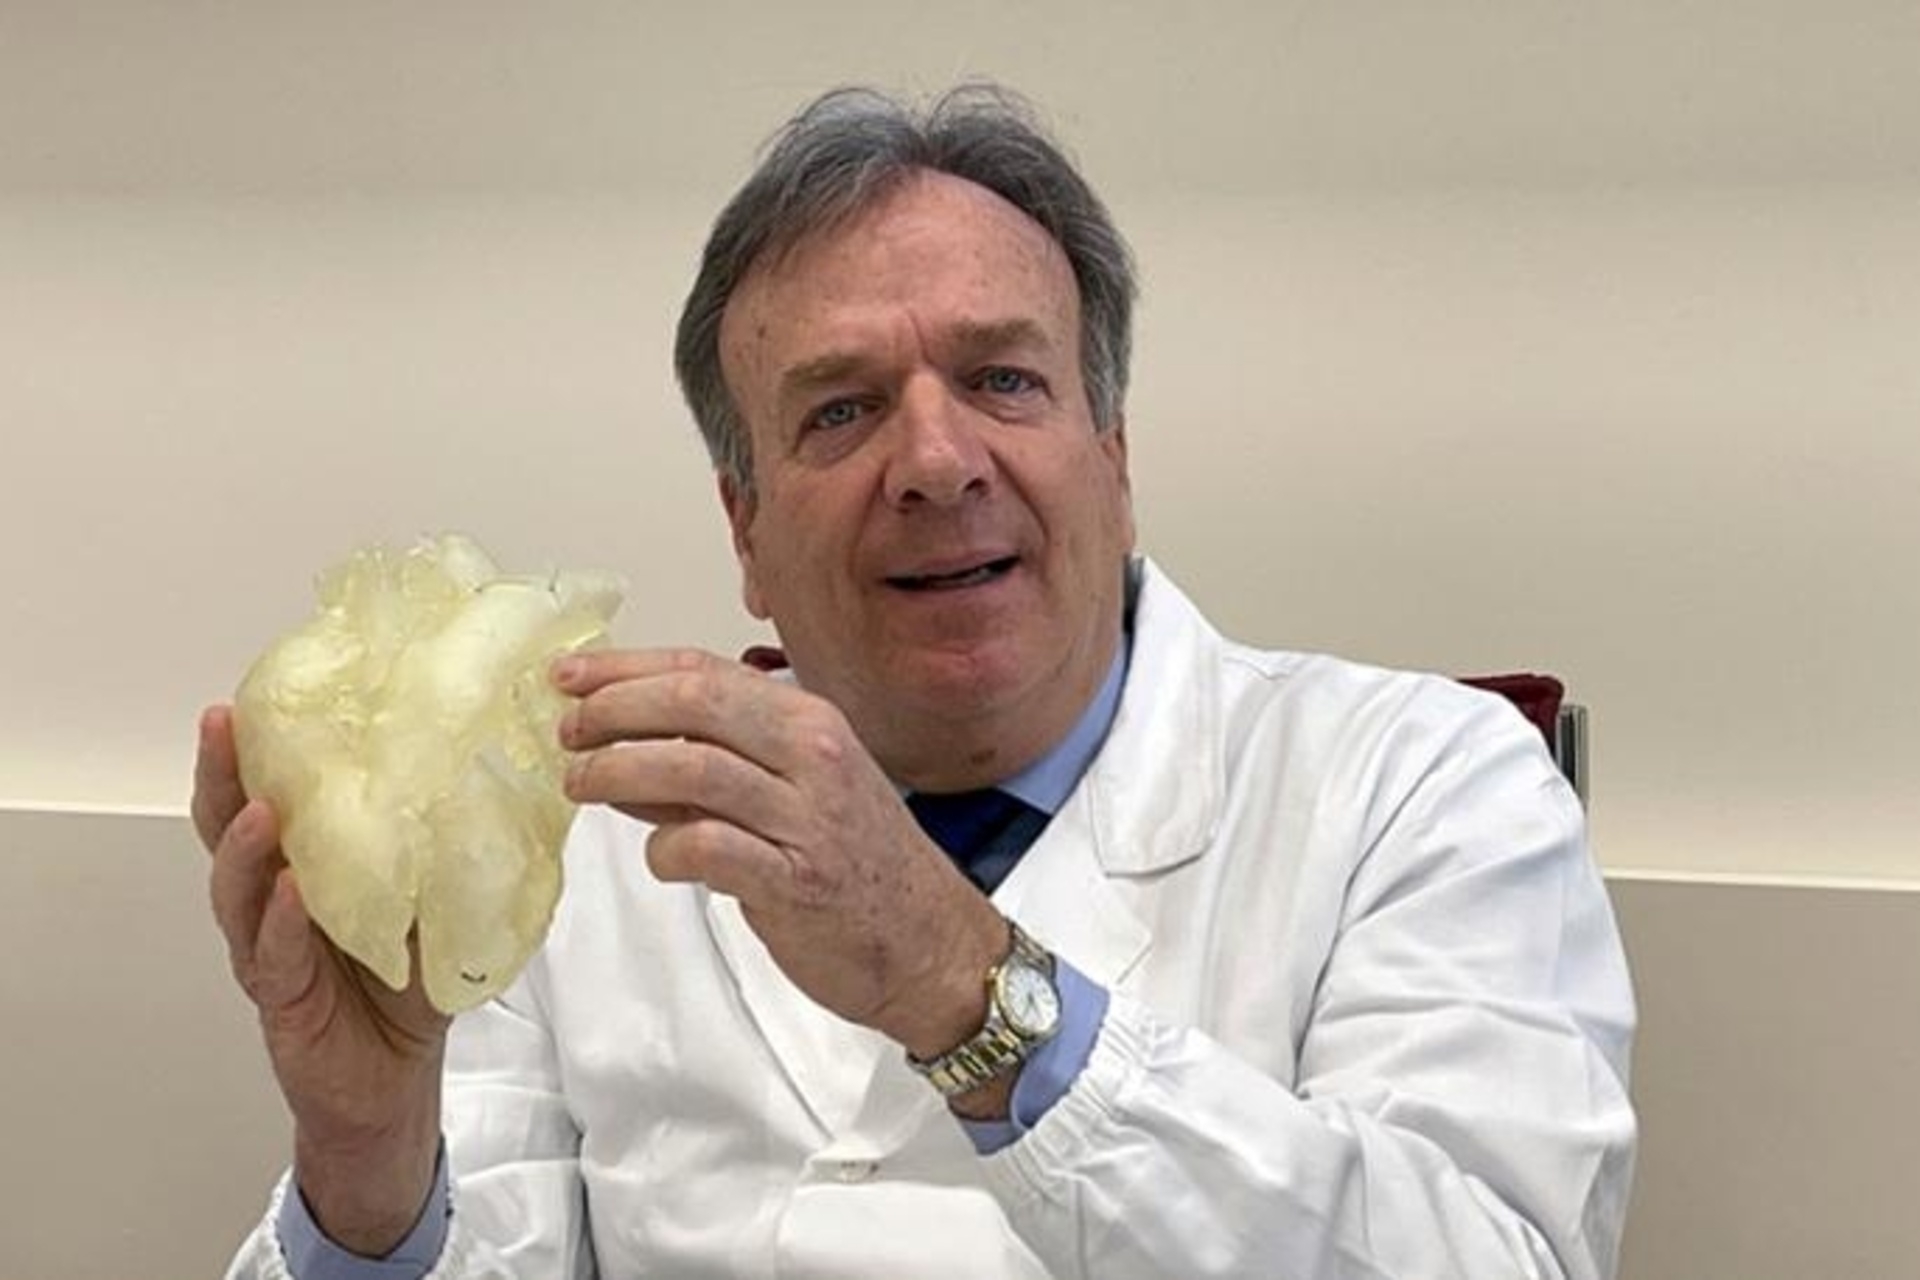 Cor artificial: el professor Gino Gerosa de la Universitat de Pàdua